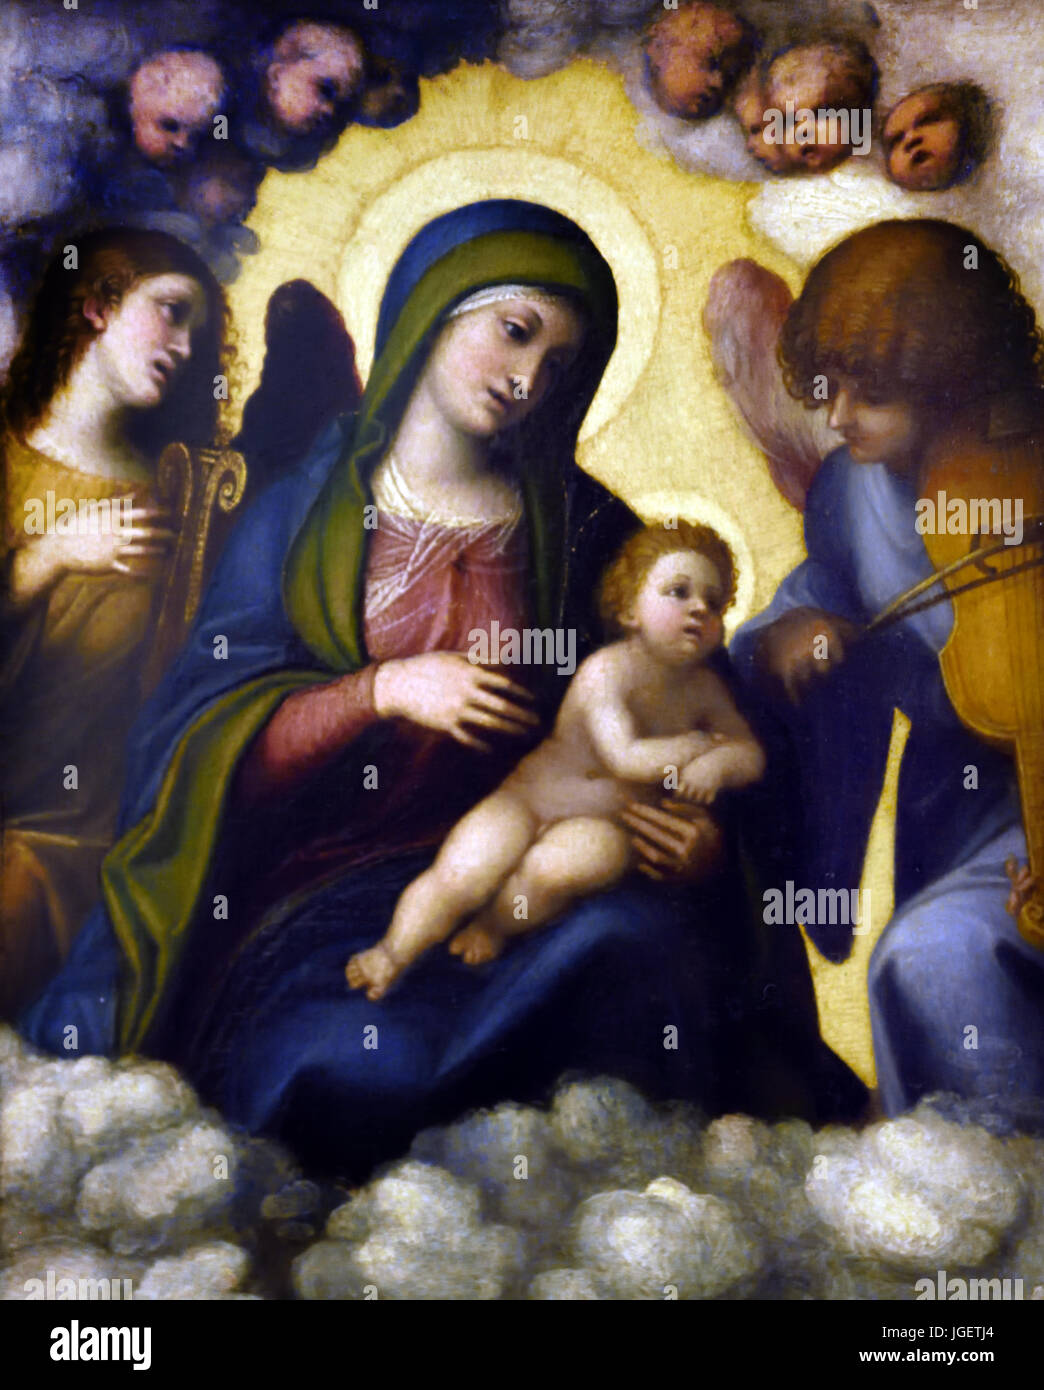 Madonna and Child in Glory 1510-1512 Antonio Allegri da Correggio 1489 –1534 usually known as Correggio painter of the Parma school of the Italian Renaissance Stock Photo